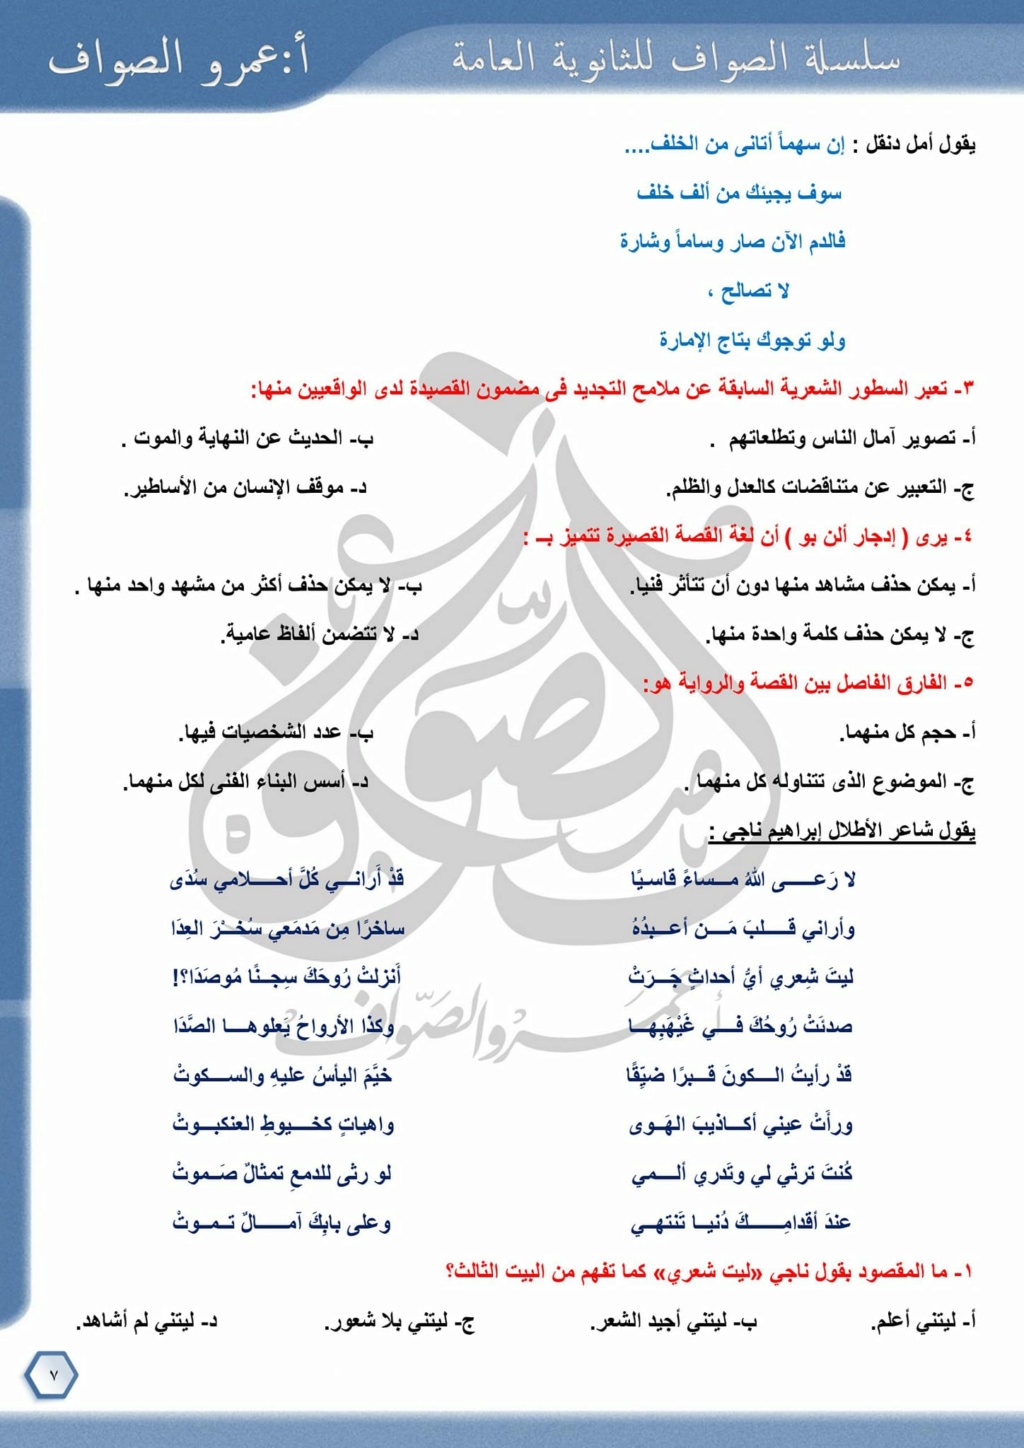 امتحان شامل في اللغة العربية للصف الثالث الثانوي ٢٠٢٣ بالإجابة عمرو الصواف 7208